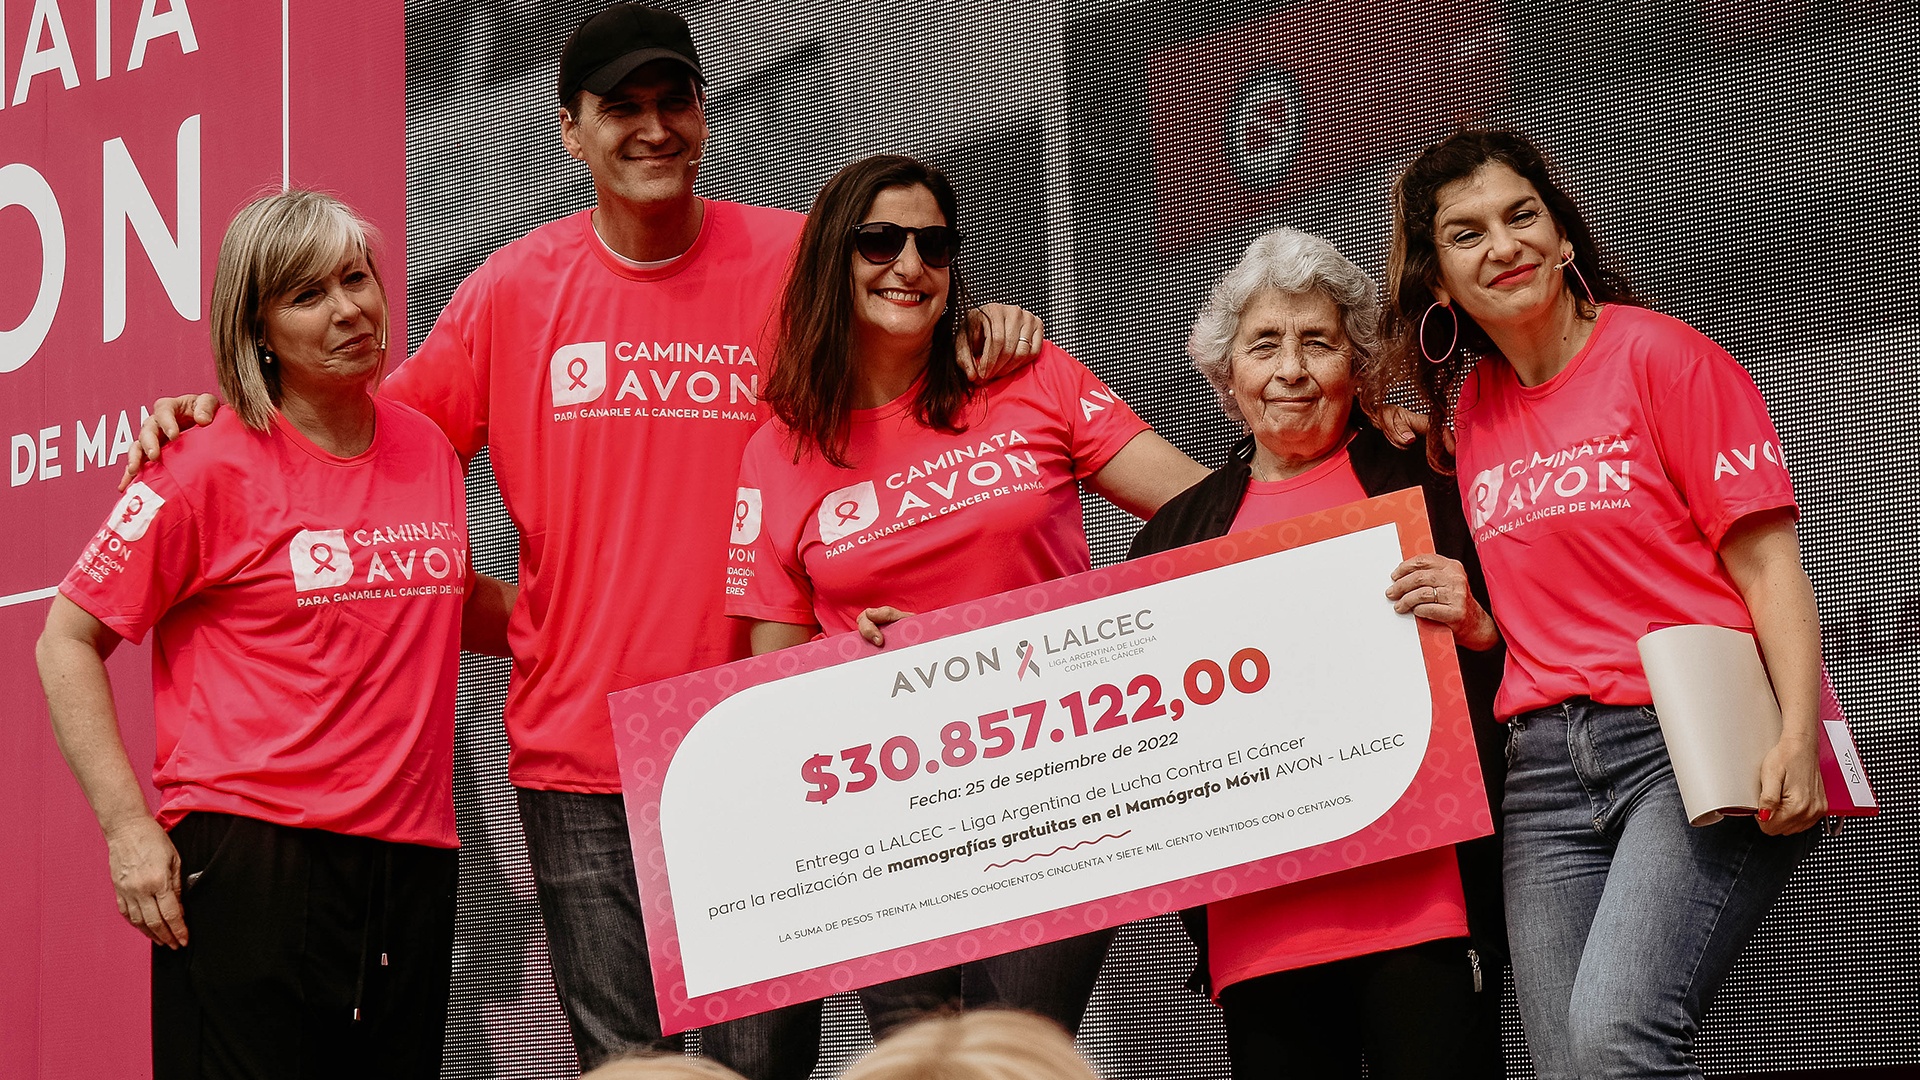 Fundación Avon donó más de 30,8 millones de pesos a la Liga Argentina de Lucha contra el Cáncer. (Crédito: Prensa Fundación Avon)